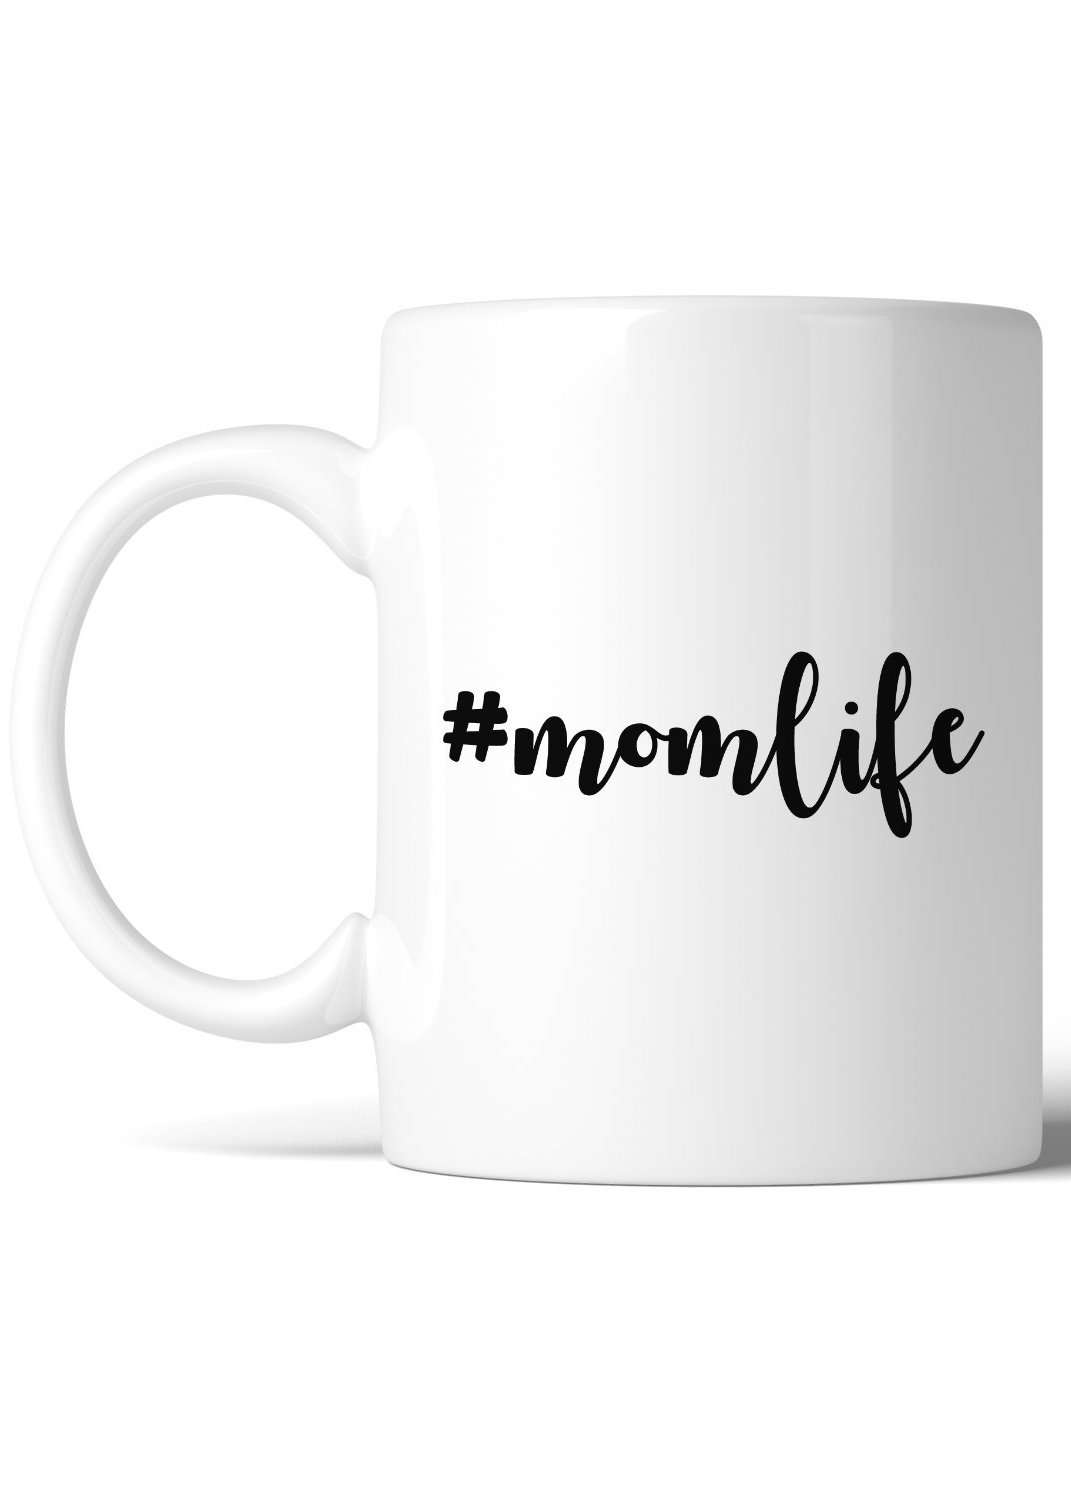 white ceramic mug with #momlife on it